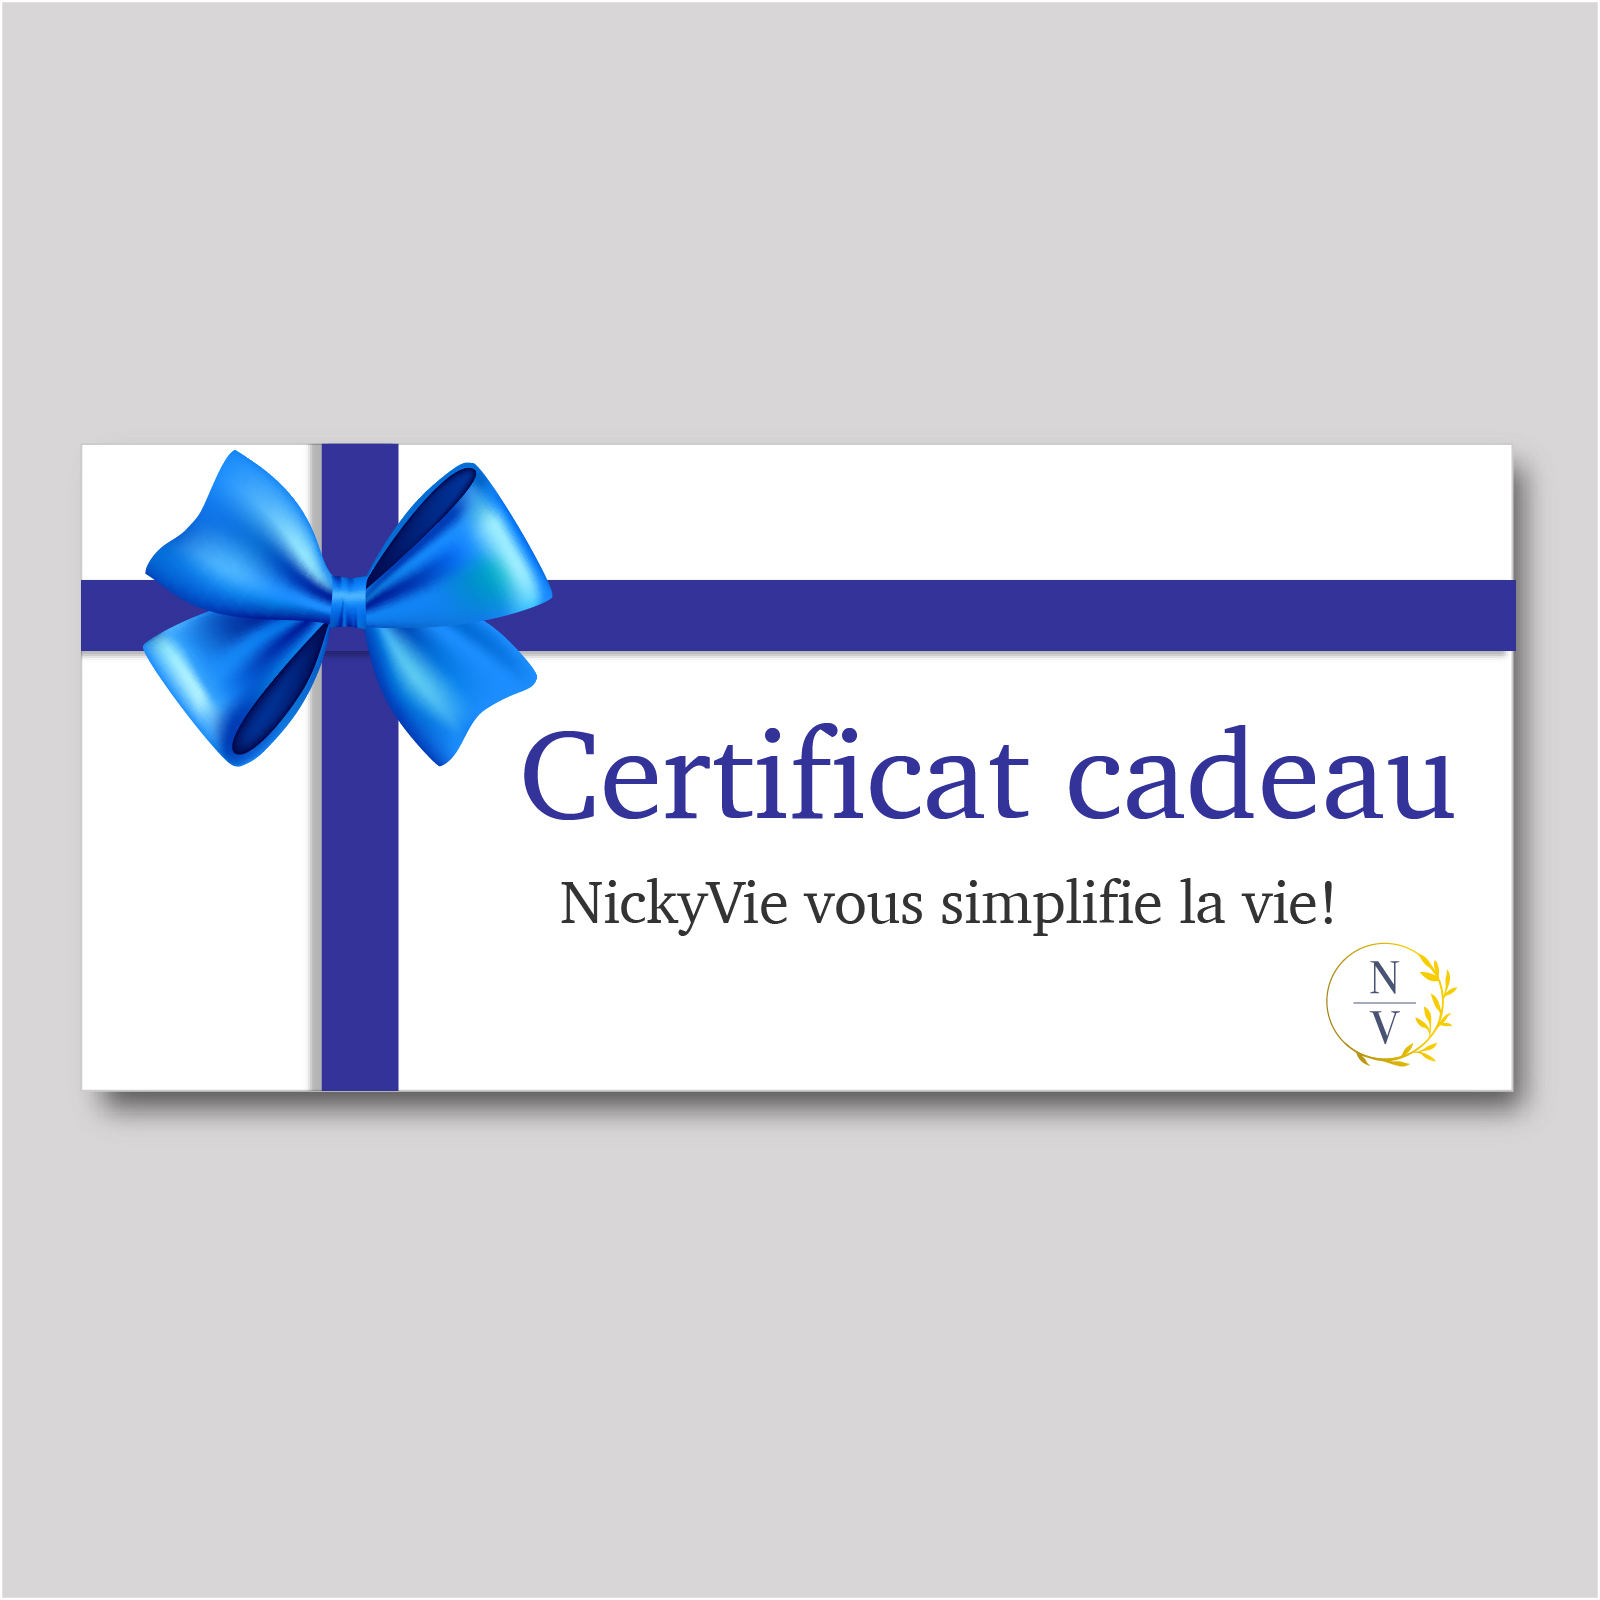 Certificat cadeau pour des services de magasinage personnalisé et conciergerie à domicile